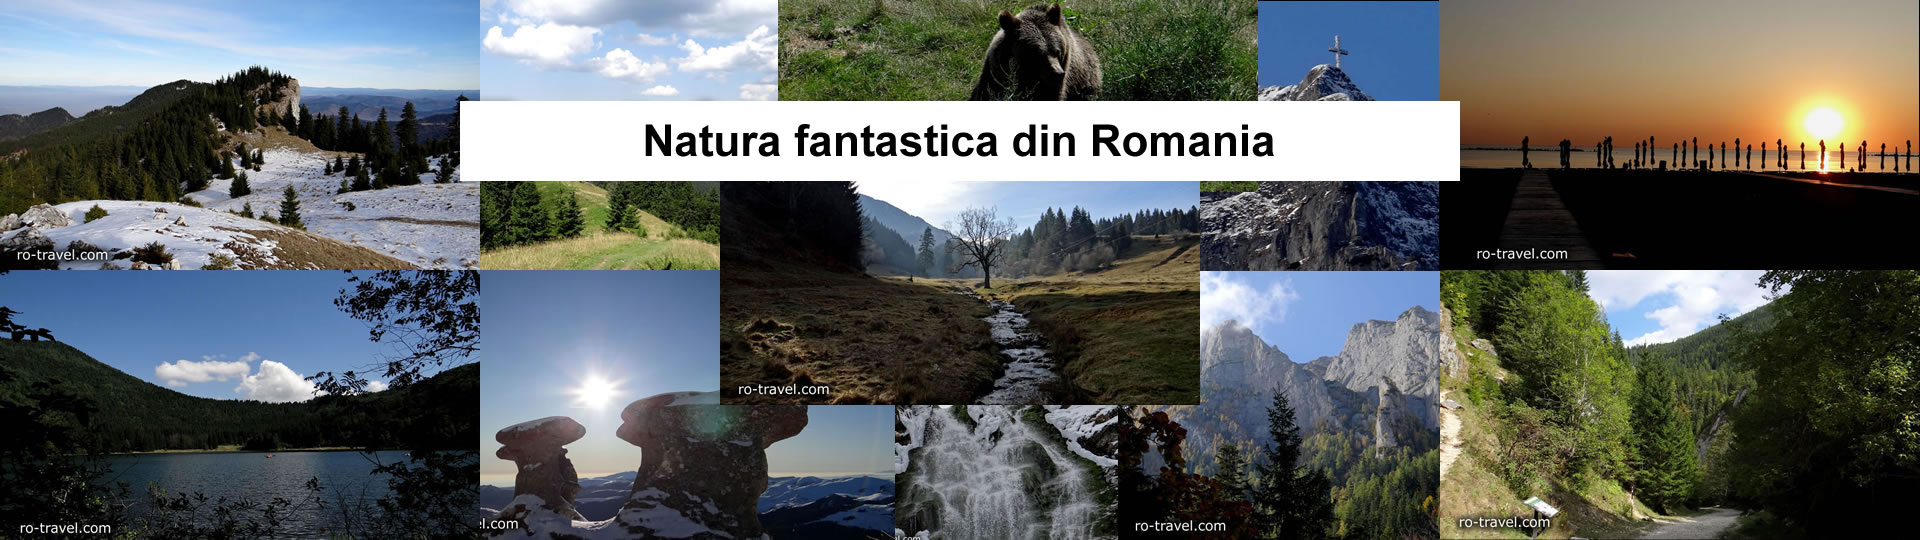 Natura fantastica din Romania